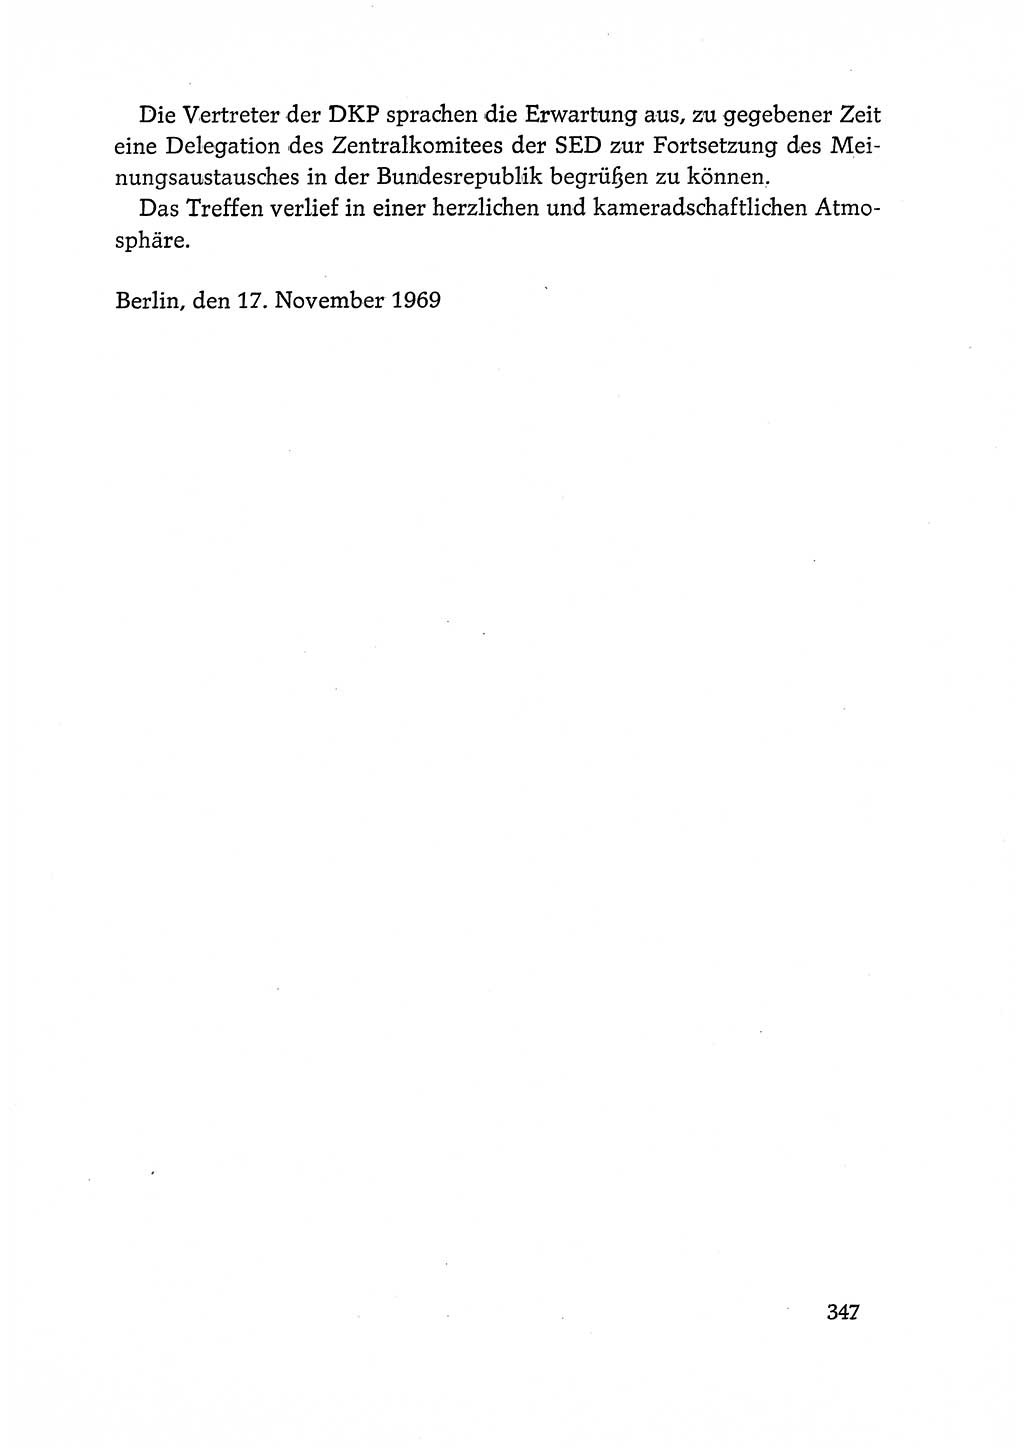 Dokumente der Sozialistischen Einheitspartei Deutschlands (SED) [Deutsche Demokratische Republik (DDR)] 1968-1969, Seite 347 (Dok. SED DDR 1968-1969, S. 347)